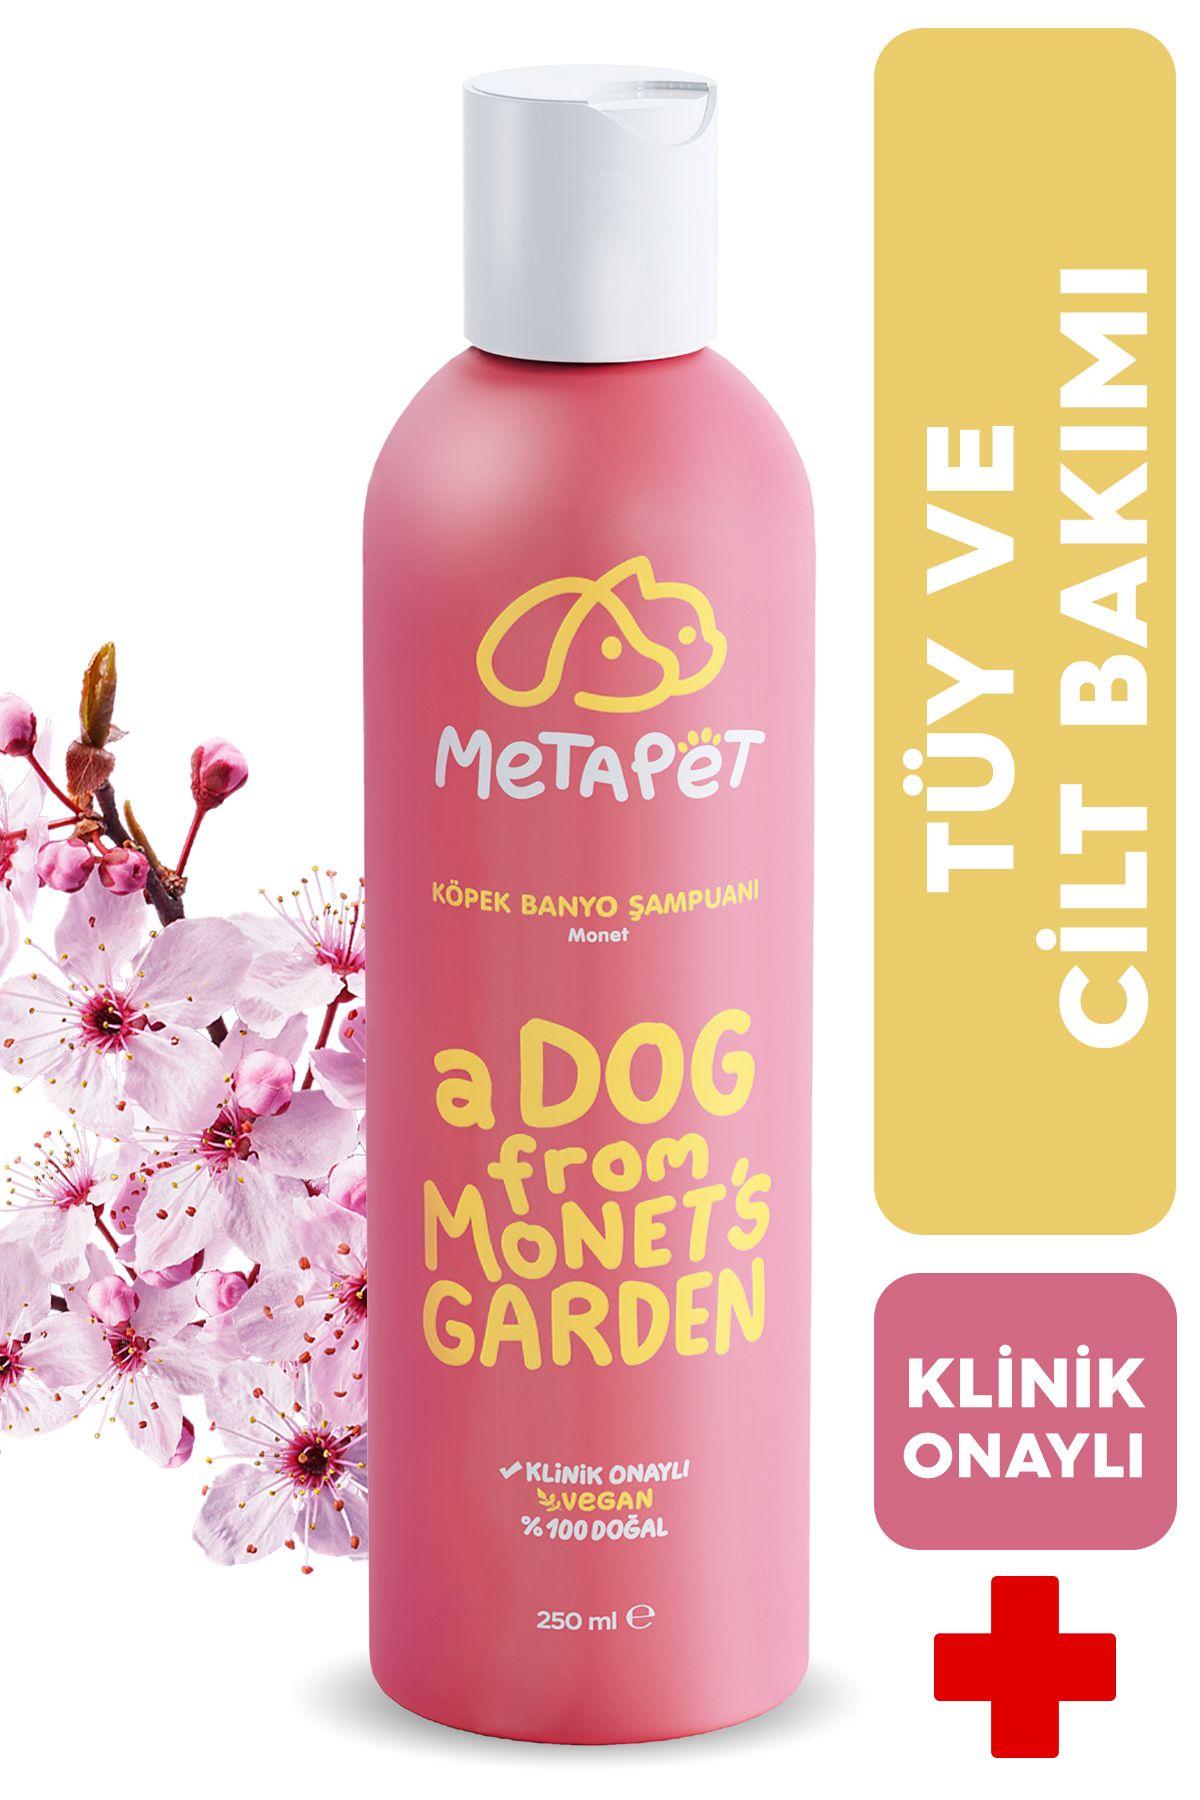 Metapet Tüy Sağlığı Için Köpek Şampuanı, Hassas Ciltli Yavrulara Uygun, Doğal-organik Koku Giderici-250 Ml.